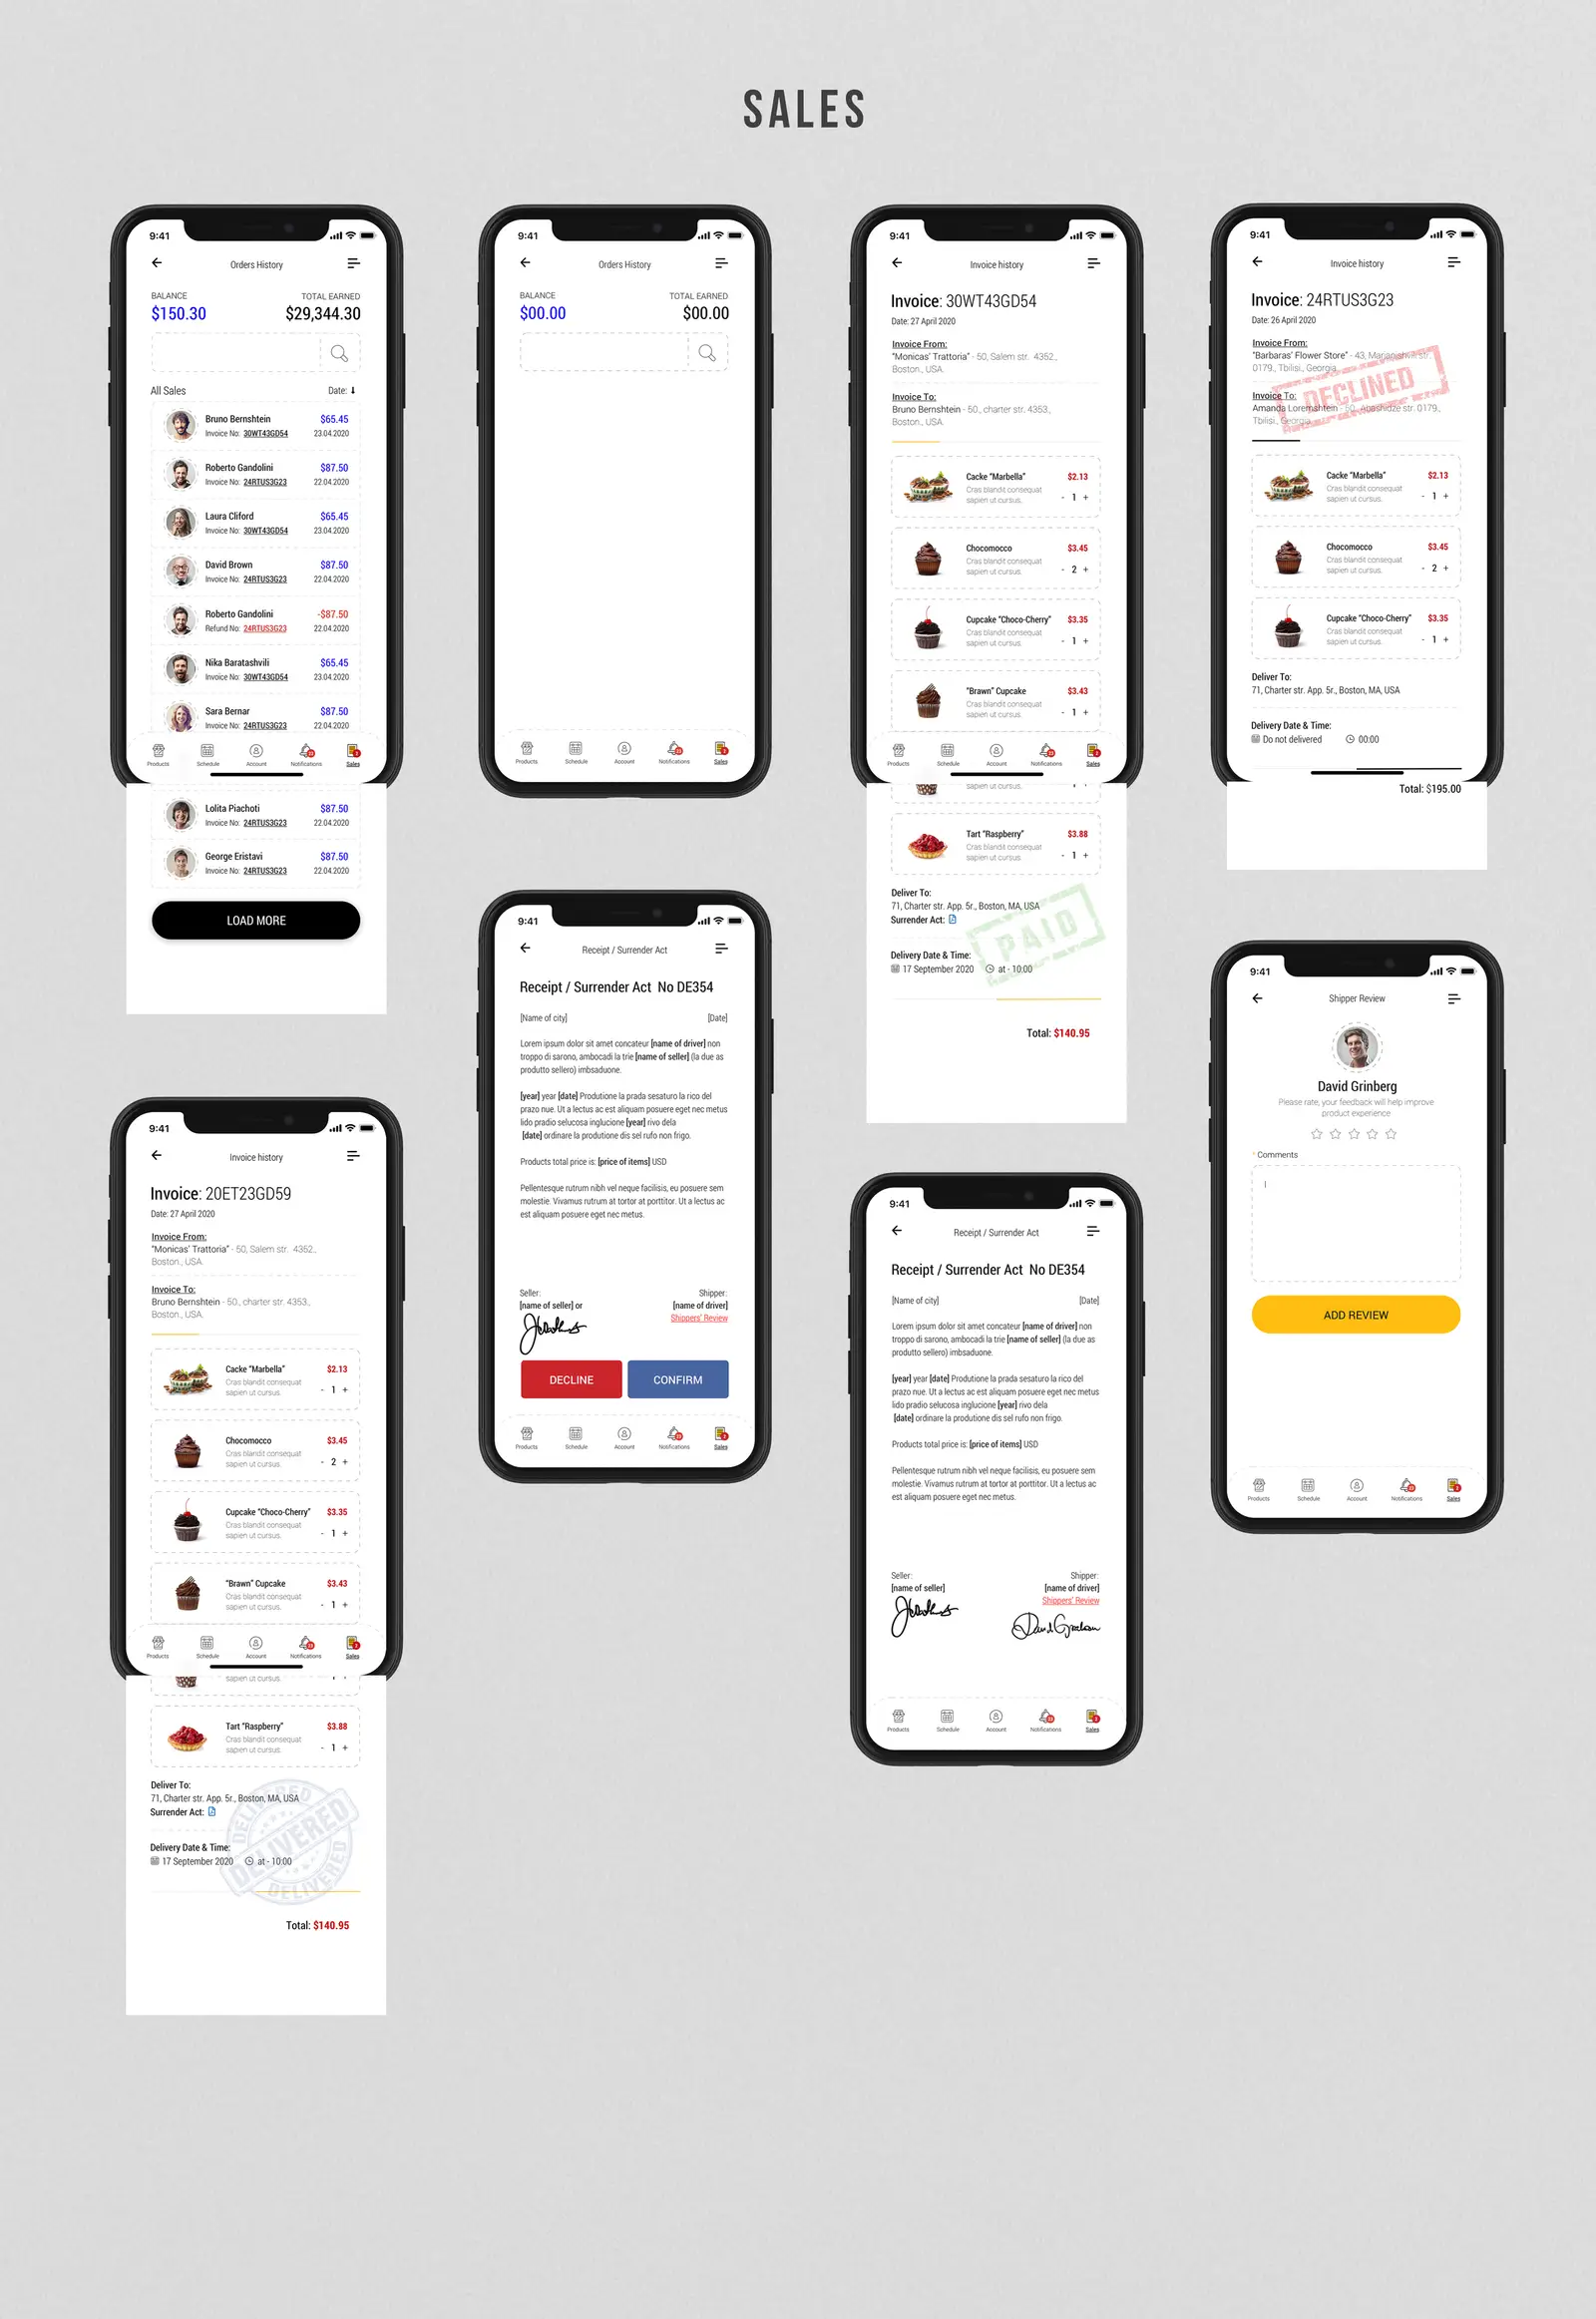 Dobule - Food Delivery UI Kit for Mobile App - 31